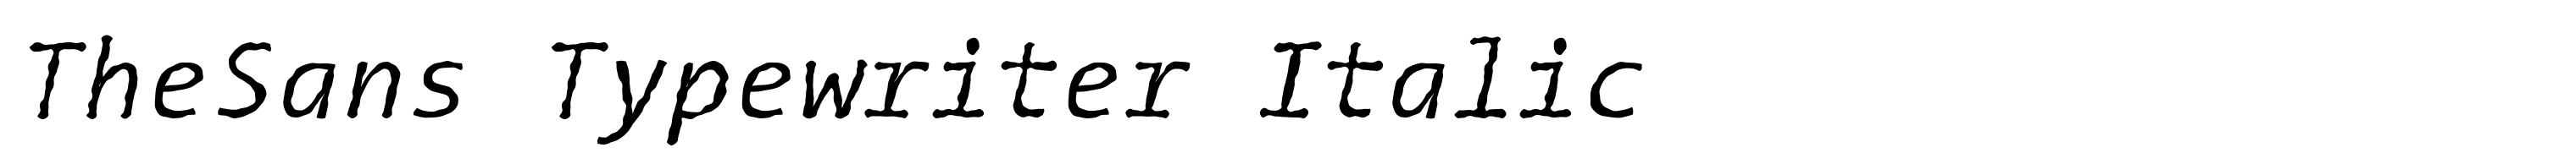 TheSans Typewriter Italic